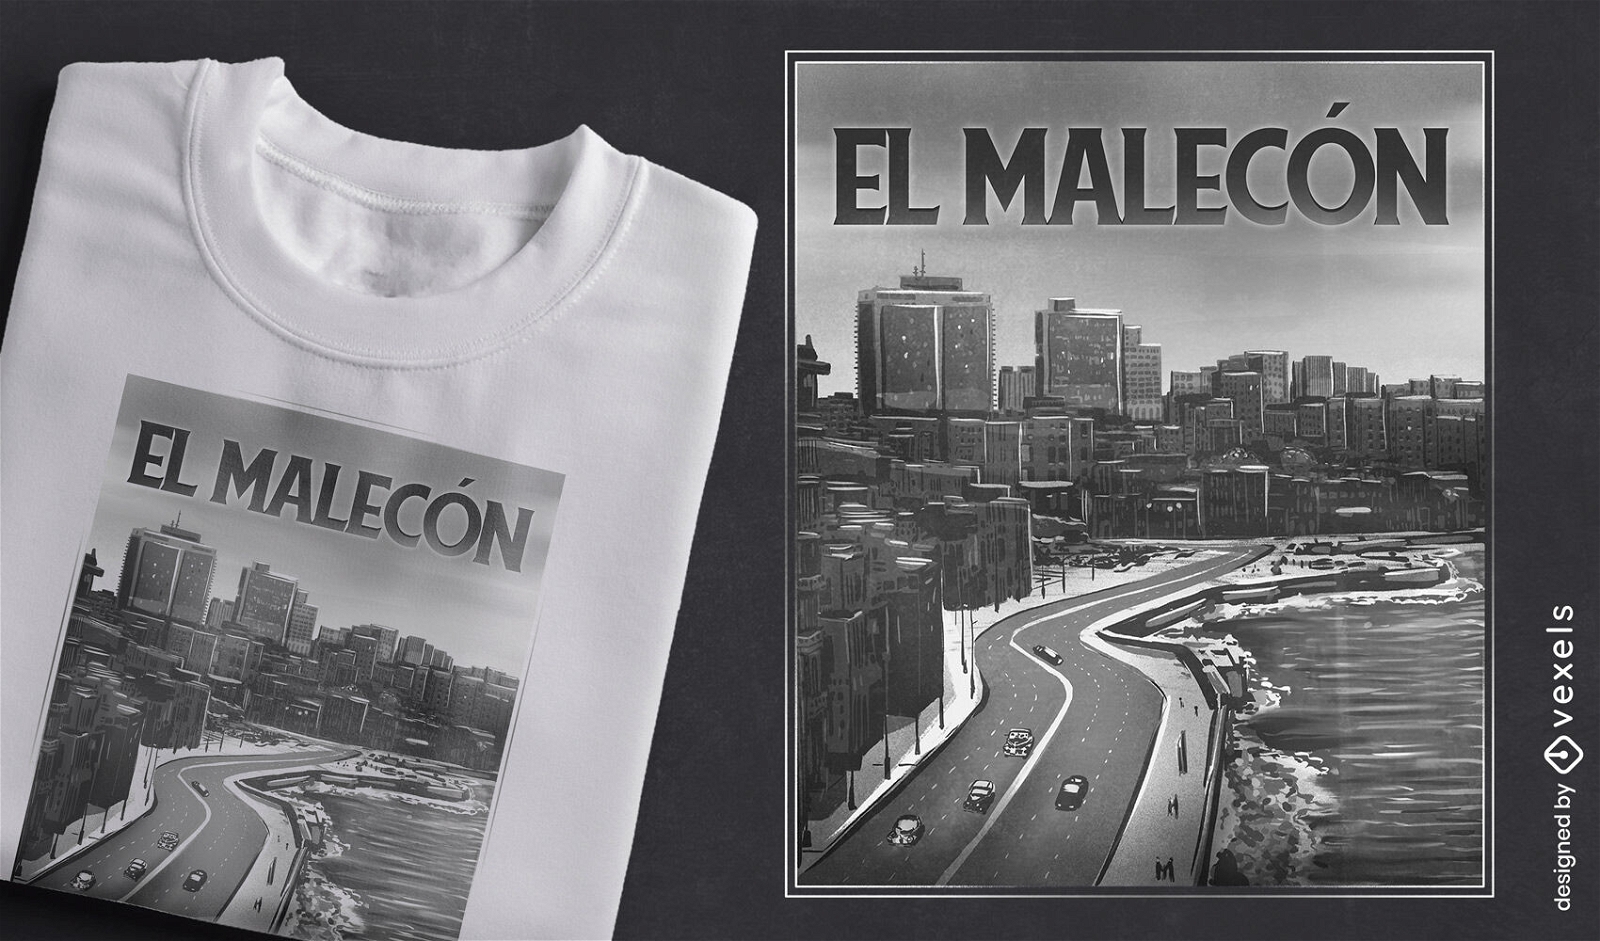 Cuba la habana city t-shirt design